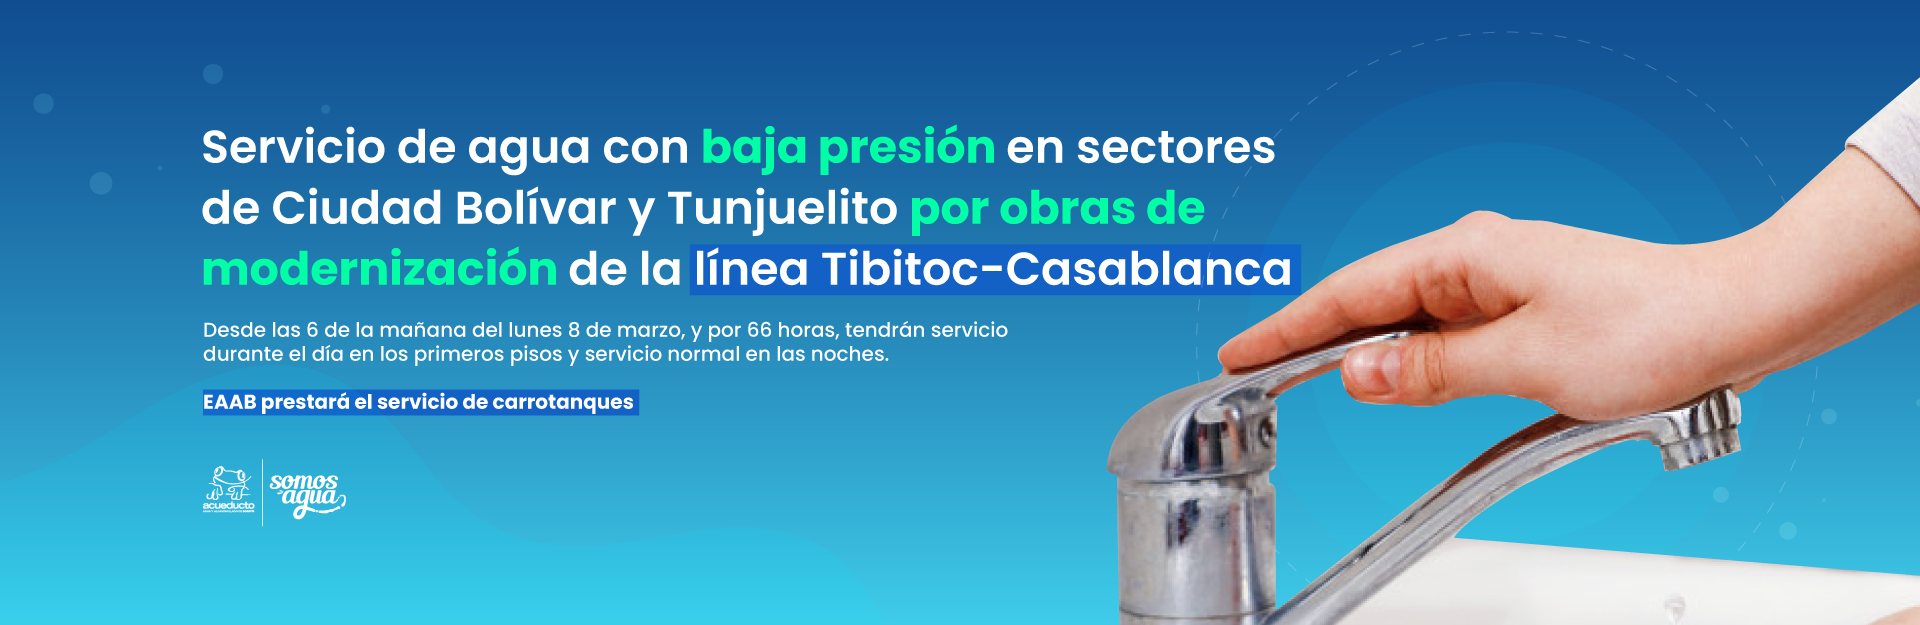 Servicio de agua con baja presión en sectores de Ciudad Bolívar y Tunjuelito por obras de modernización de la línea Tibitoc-Casablanca